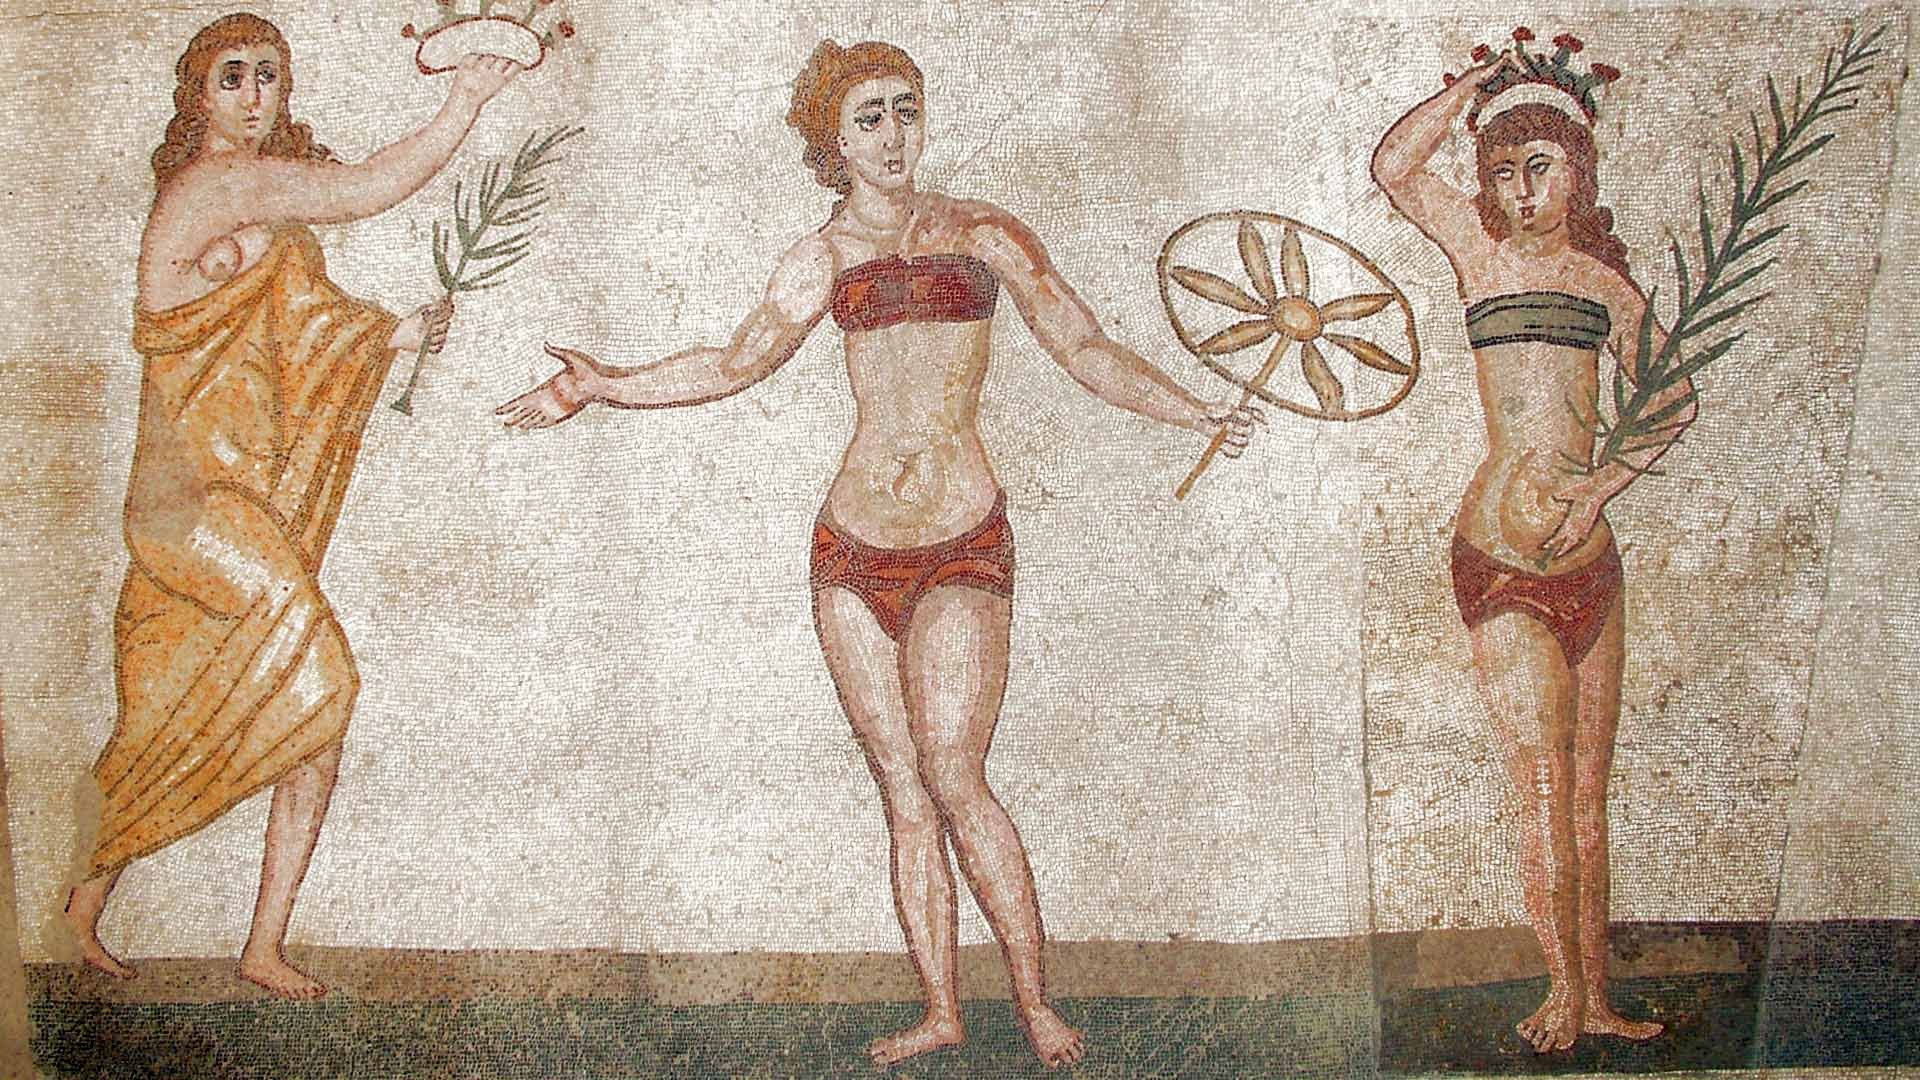 Roman girls in “bikinis”